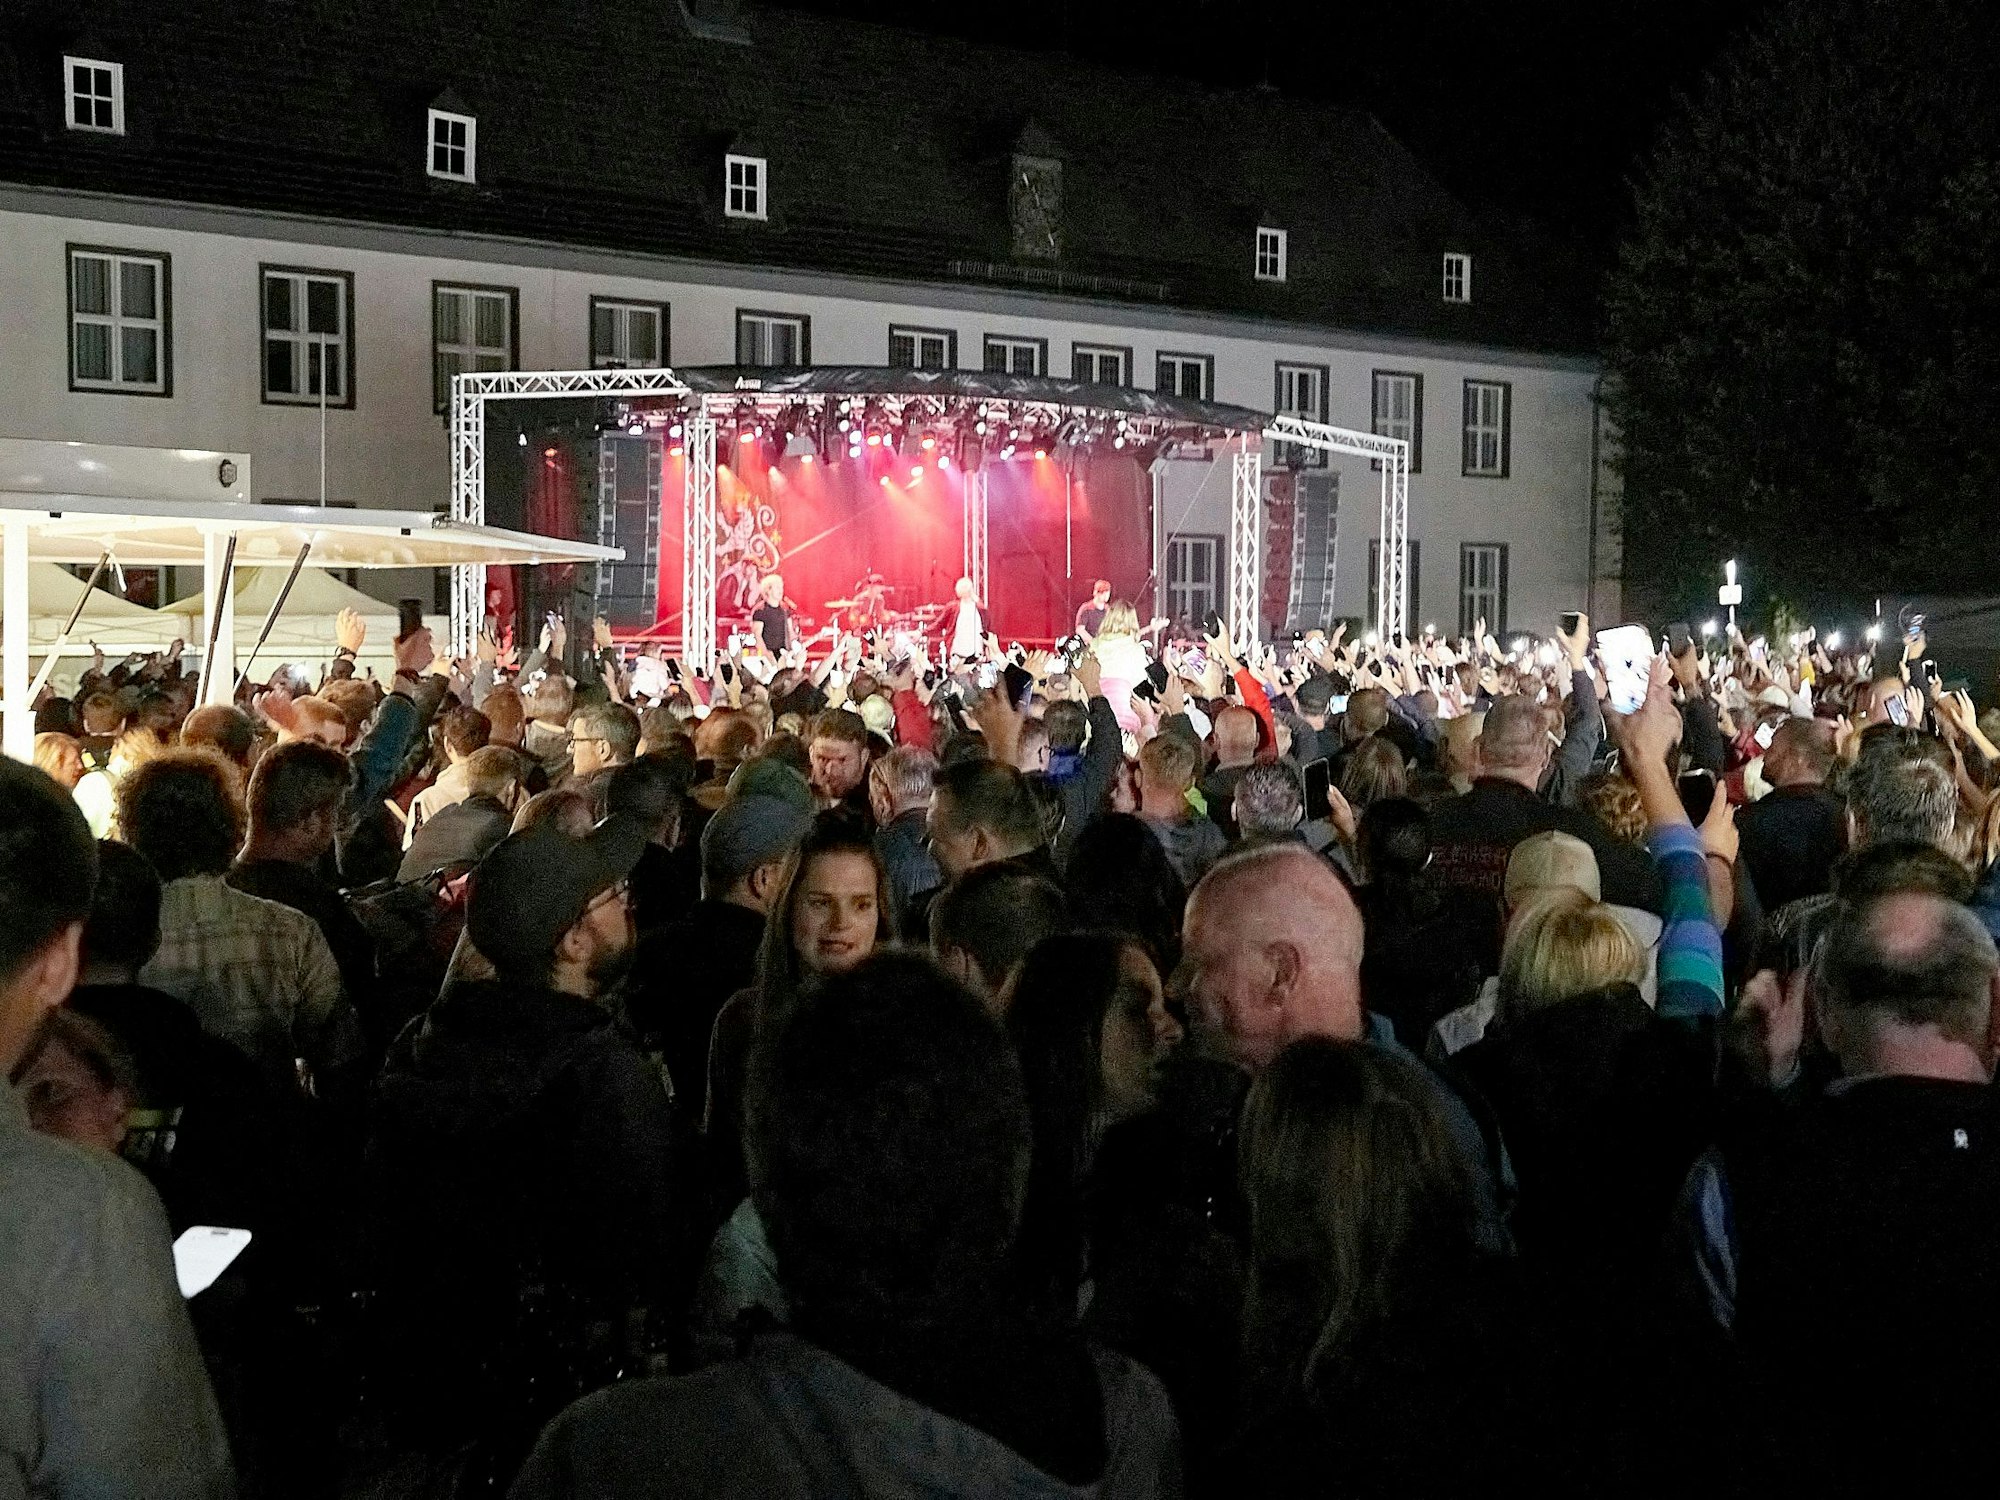 Das Bild zeigt eine Menschenmenge auf dem Marienplatz in Gemünd. Im Hintergrund ist die Bühne zu sehen, die vor dem Gebäude des Amtsgerichts aufgebaut wurde.